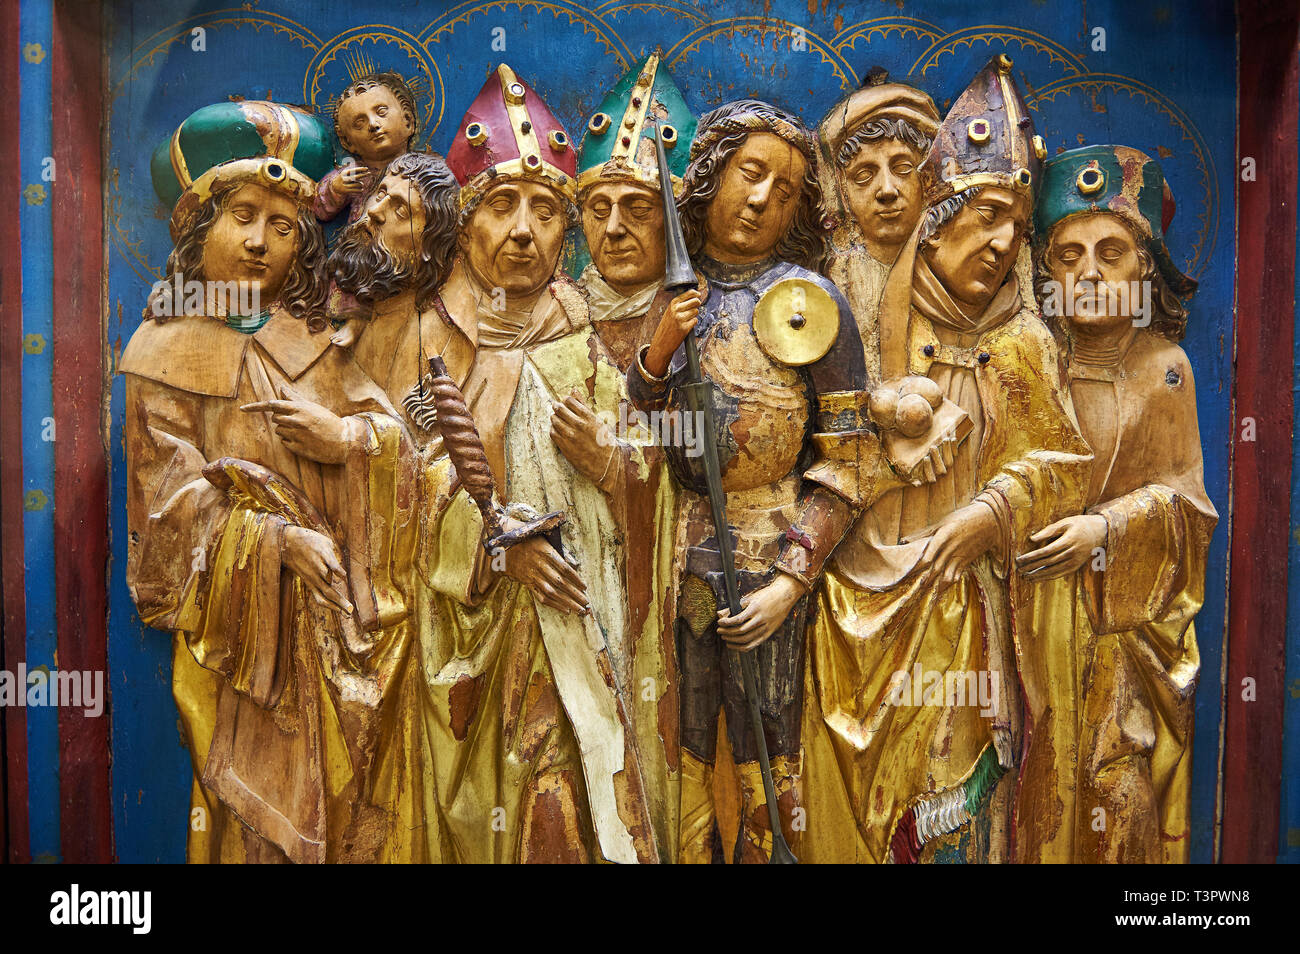 Gemalte gotische Holz- 14 Fürbitter altarbild am Ende des 15. Jahrhunderts in Franken. Das Panel darstellen 14 Heiligen insgesamt. Inv RF Stockfoto